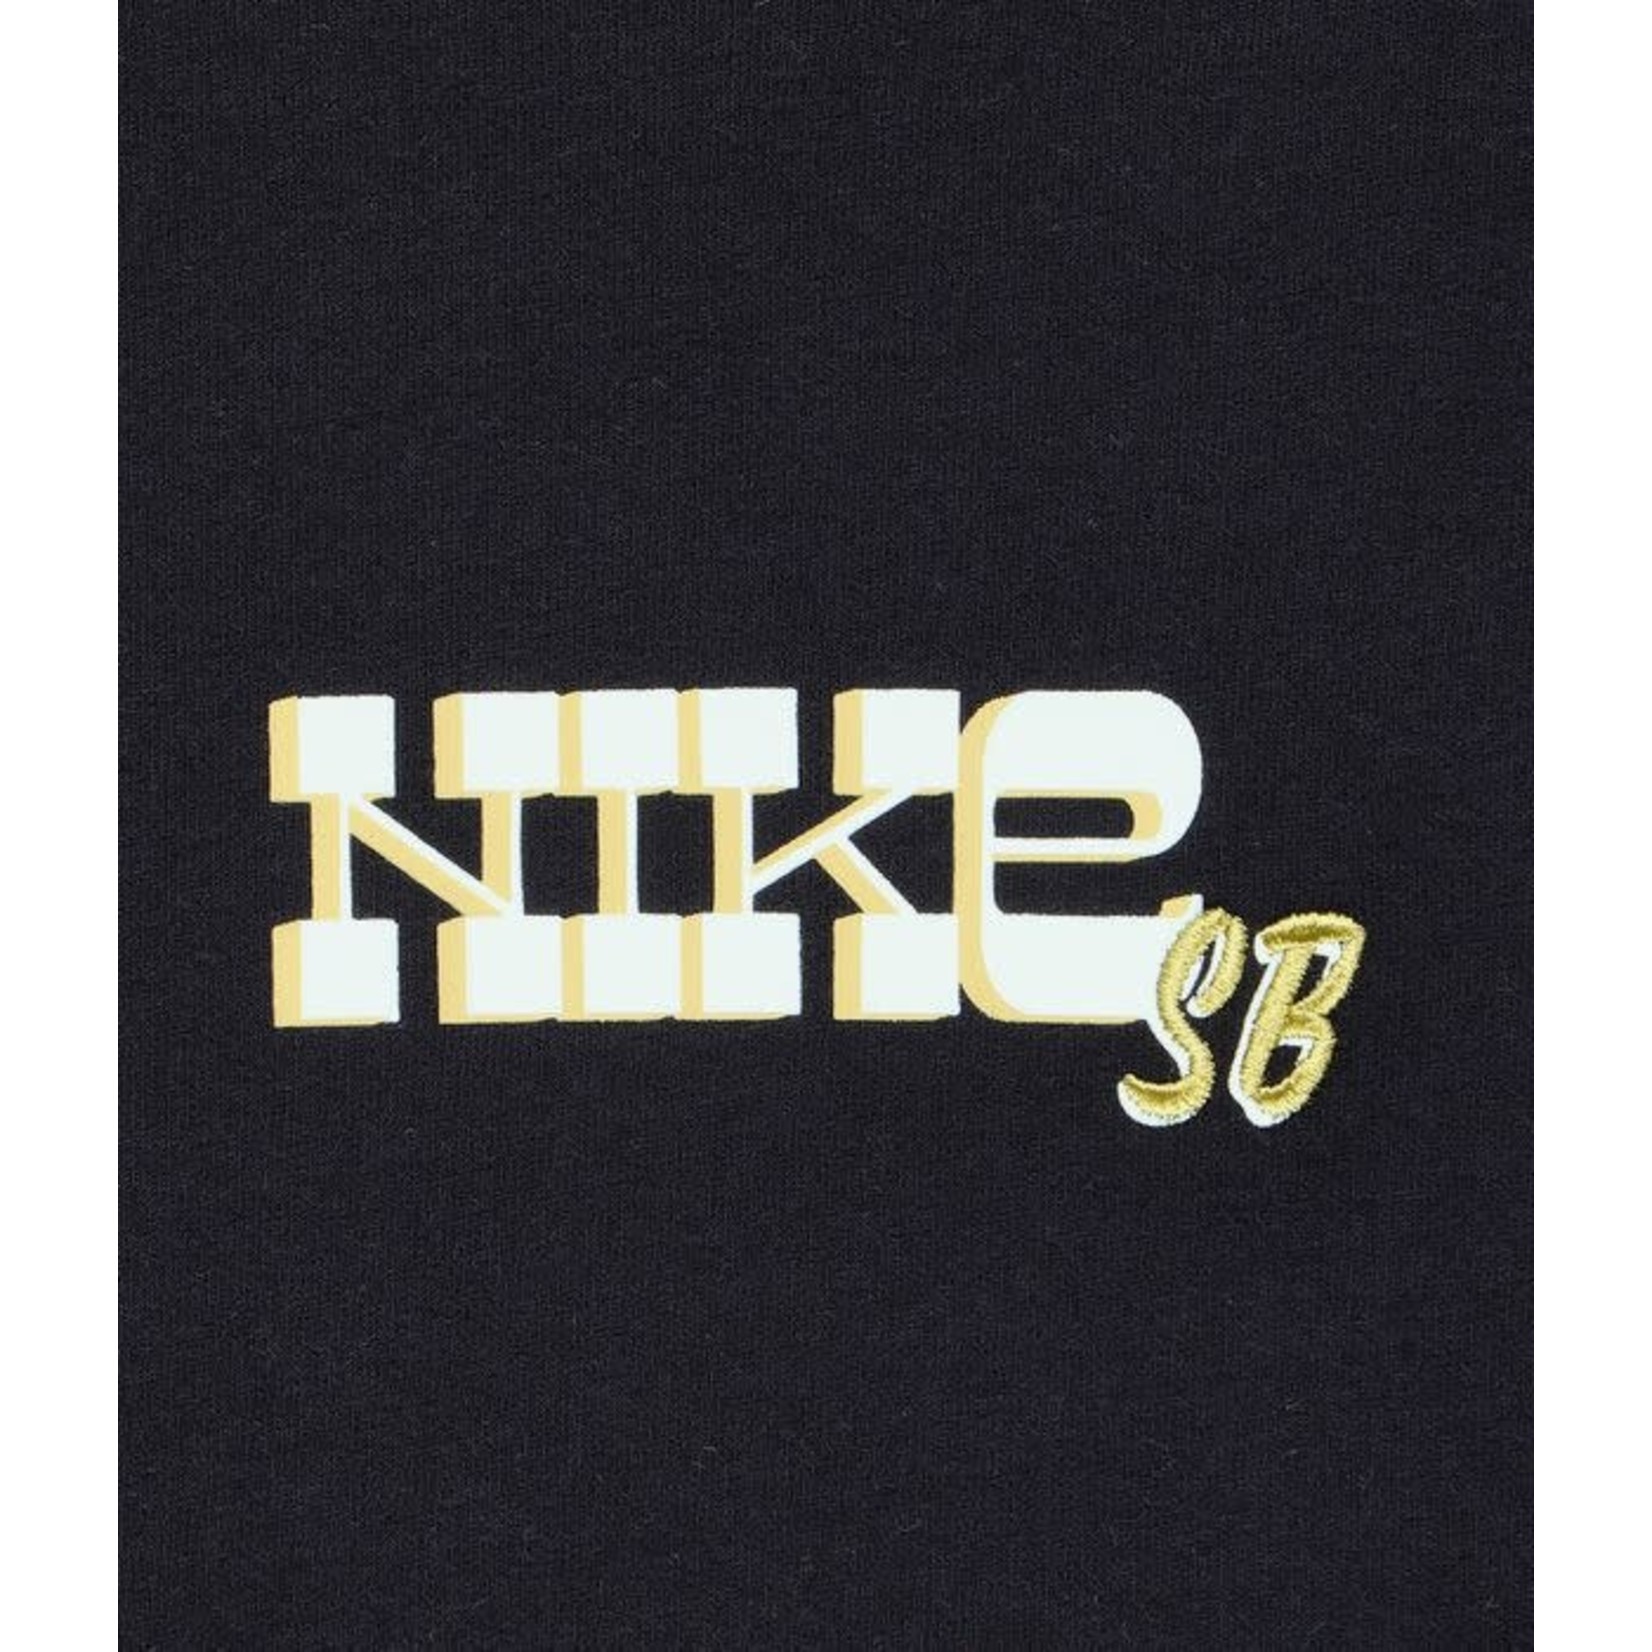 Nike SB NIKE SB EMB BLOCK TEE